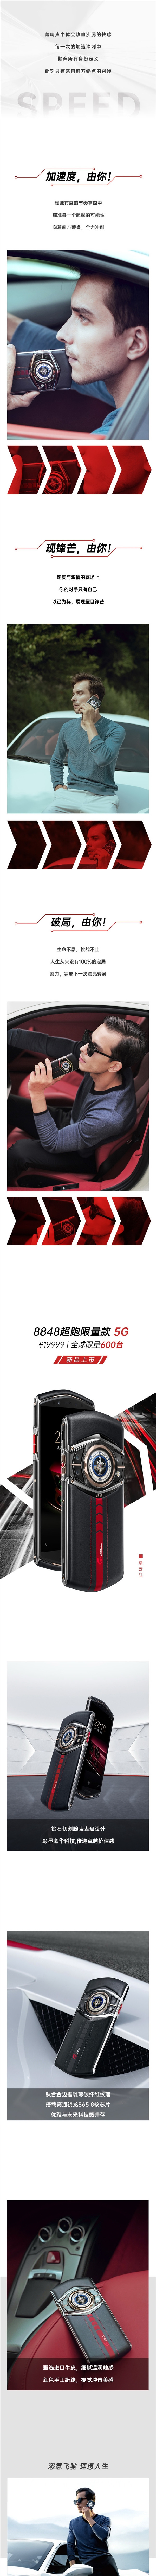 8848发布超跑限量款5G手机，全球仅600台